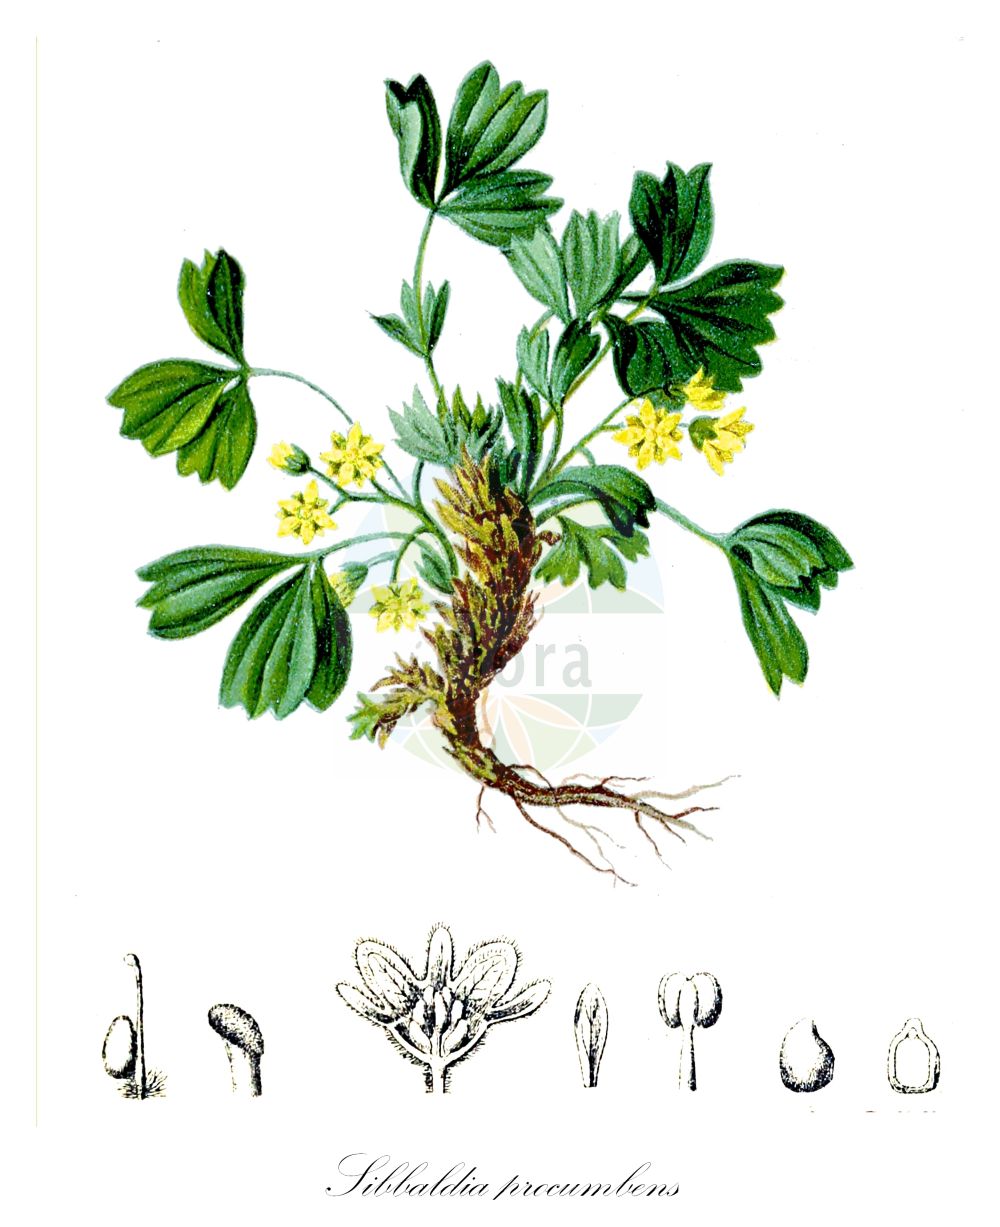 Historische Abbildung von Sibbaldia procumbens (Alpen-Gelbling - Sibbaldia). Das Bild zeigt Blatt, Bluete, Frucht und Same. ---- Historical Drawing of Sibbaldia procumbens (Alpen-Gelbling - Sibbaldia). The image is showing leaf, flower, fruit and seed.(Sibbaldia procumbens,Alpen-Gelbling,Sibbaldia,Coelas procumbens,Dactylophyllum sibbaldia,Dynamidium procumbens,Potentilla procumbens,Potentilla sibbaldiana,Potentilla sibbaldii,Sibbaldia aphanopetala,Sibbaldia macrophylla,Sibbaldia octopetala,Sibbaldia procumbens,Alpen-Gelbling,Sibbaldia,Creeping Sibbaldia,Sibbaldia,Gelbling,Sibbaldia,Rosaceae,Rosengewächse,Rose family,Blatt,Bluete,Frucht,Same,leaf,flower,fruit,seed,Hartinger & von Dalla Torre (1806f))